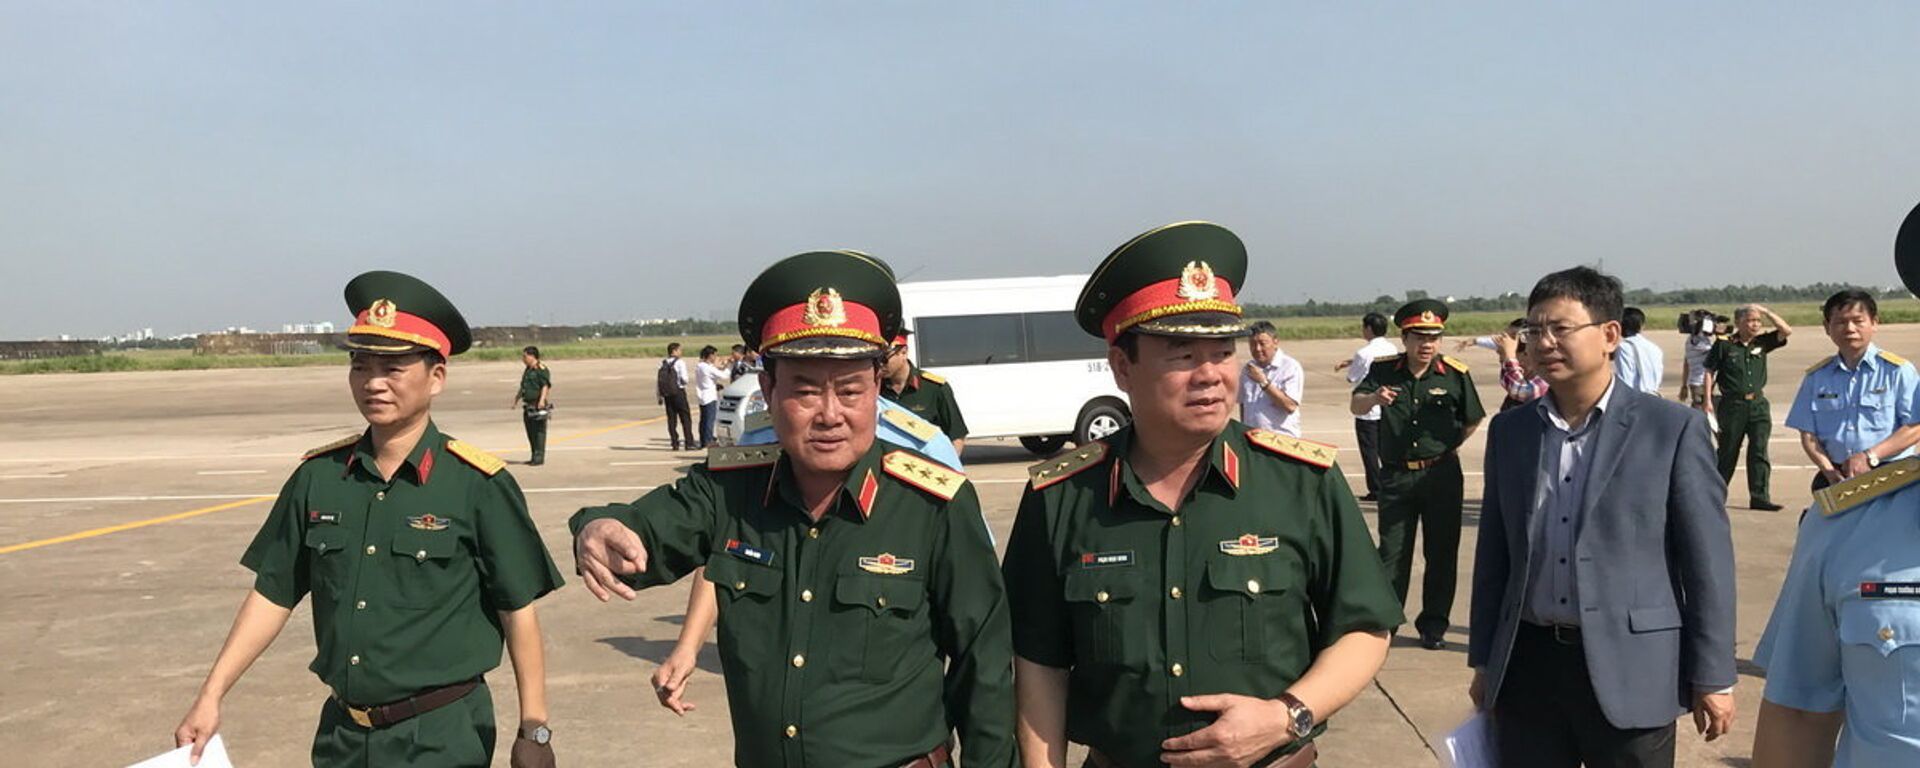 Thượng tướng Trần Đơn, Thứ trưởng Bộ Quốc phòng dẫn đầu đoàn khảo sát 21ha đất quốc phòng để bàn giao làm sân đỗ lưỡng dụng - Sputnik Việt Nam, 1920, 05.07.2017